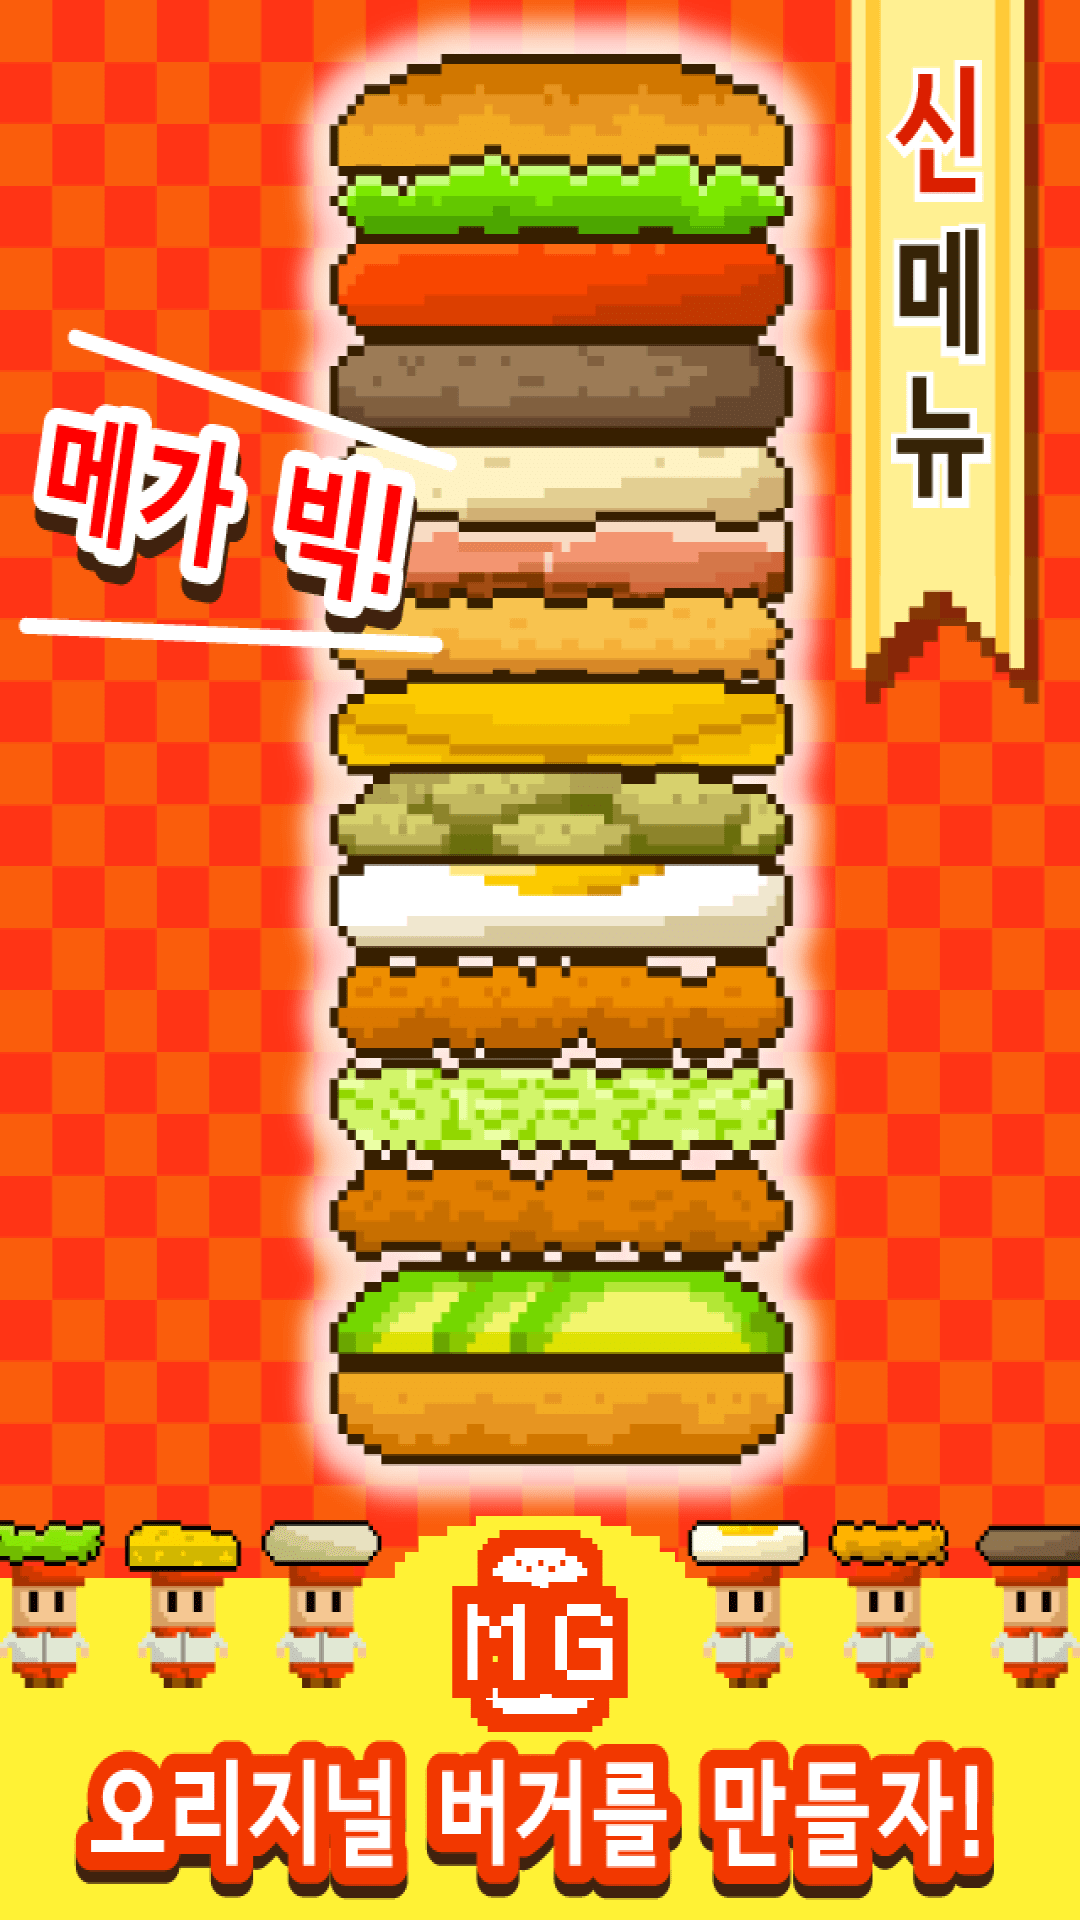 巨型汉堡包游戏3